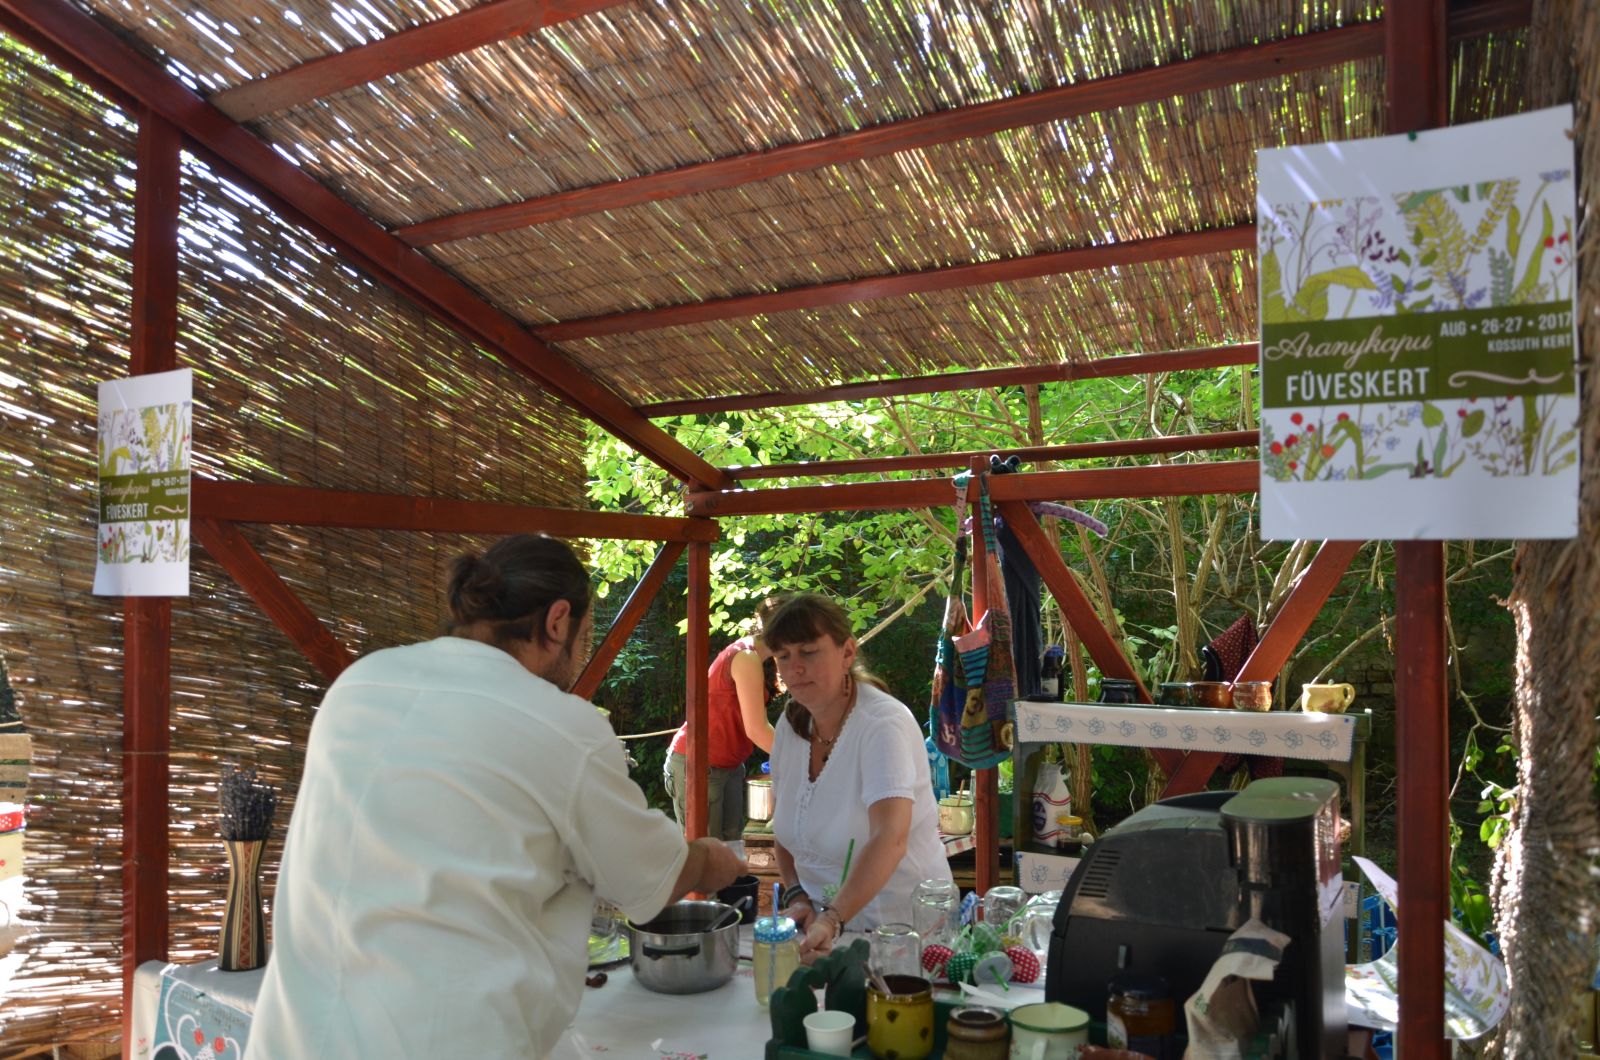 Az Aranykapu Kulturális Egyesület kávézót, teázót is nyitott, ahol biotermékeket fogyaszthattunk.
